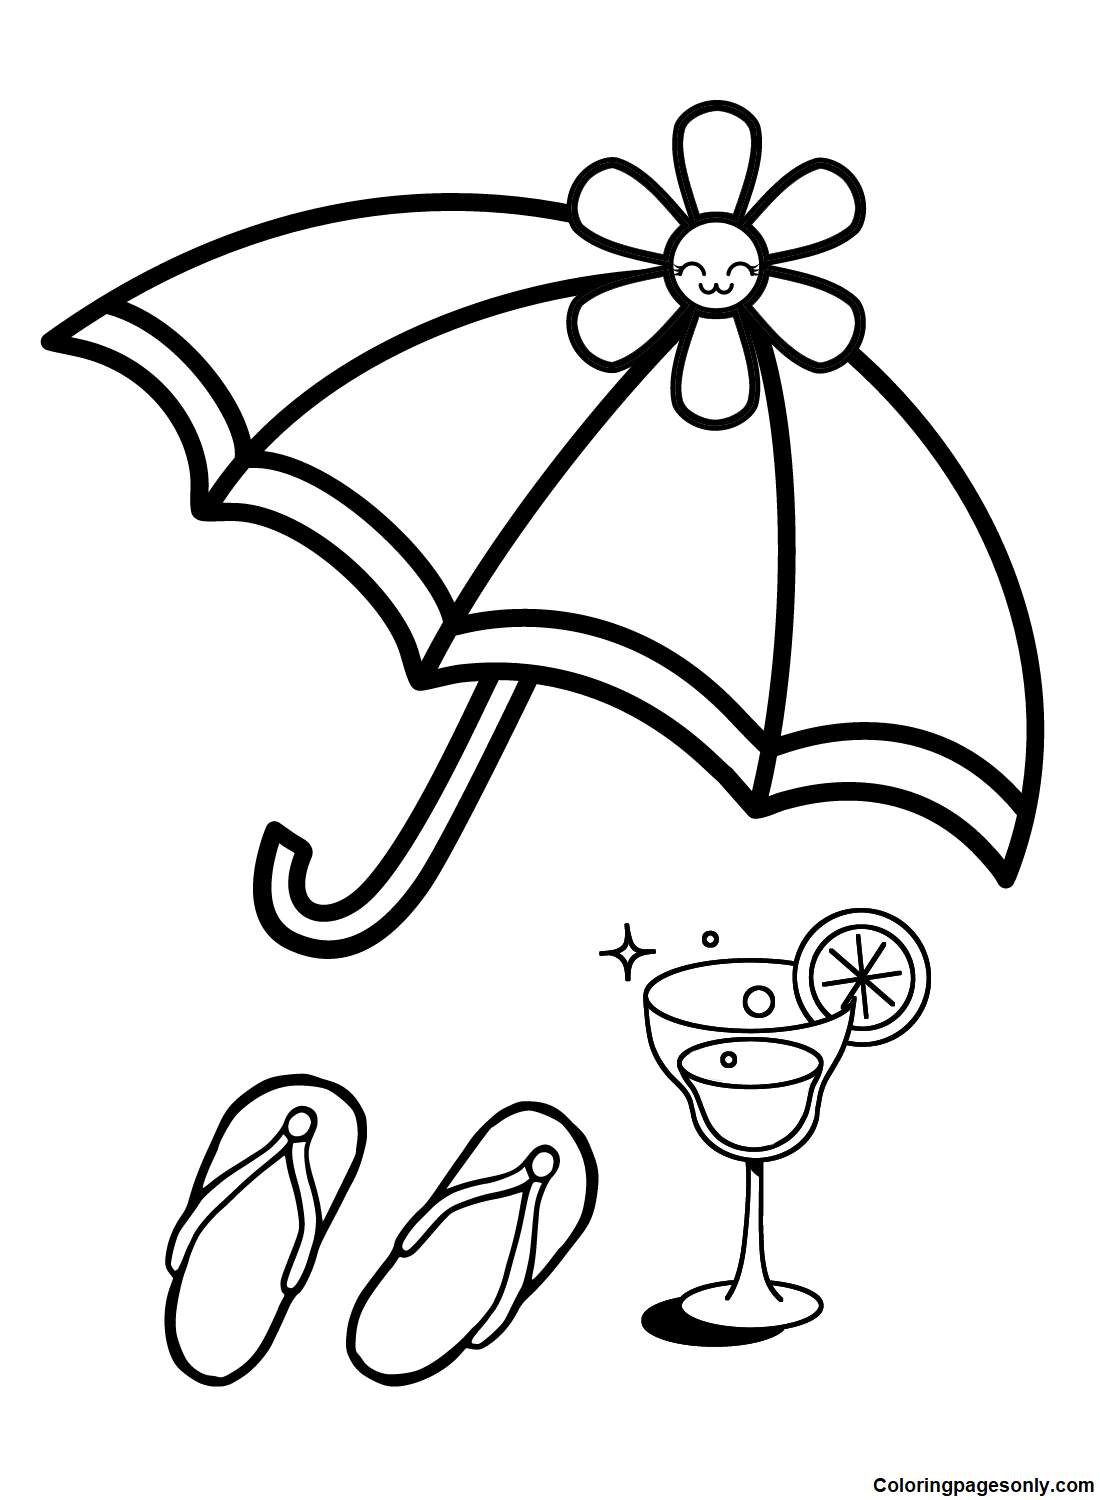 Guarda-chuva fofo para crianças da Umbrella